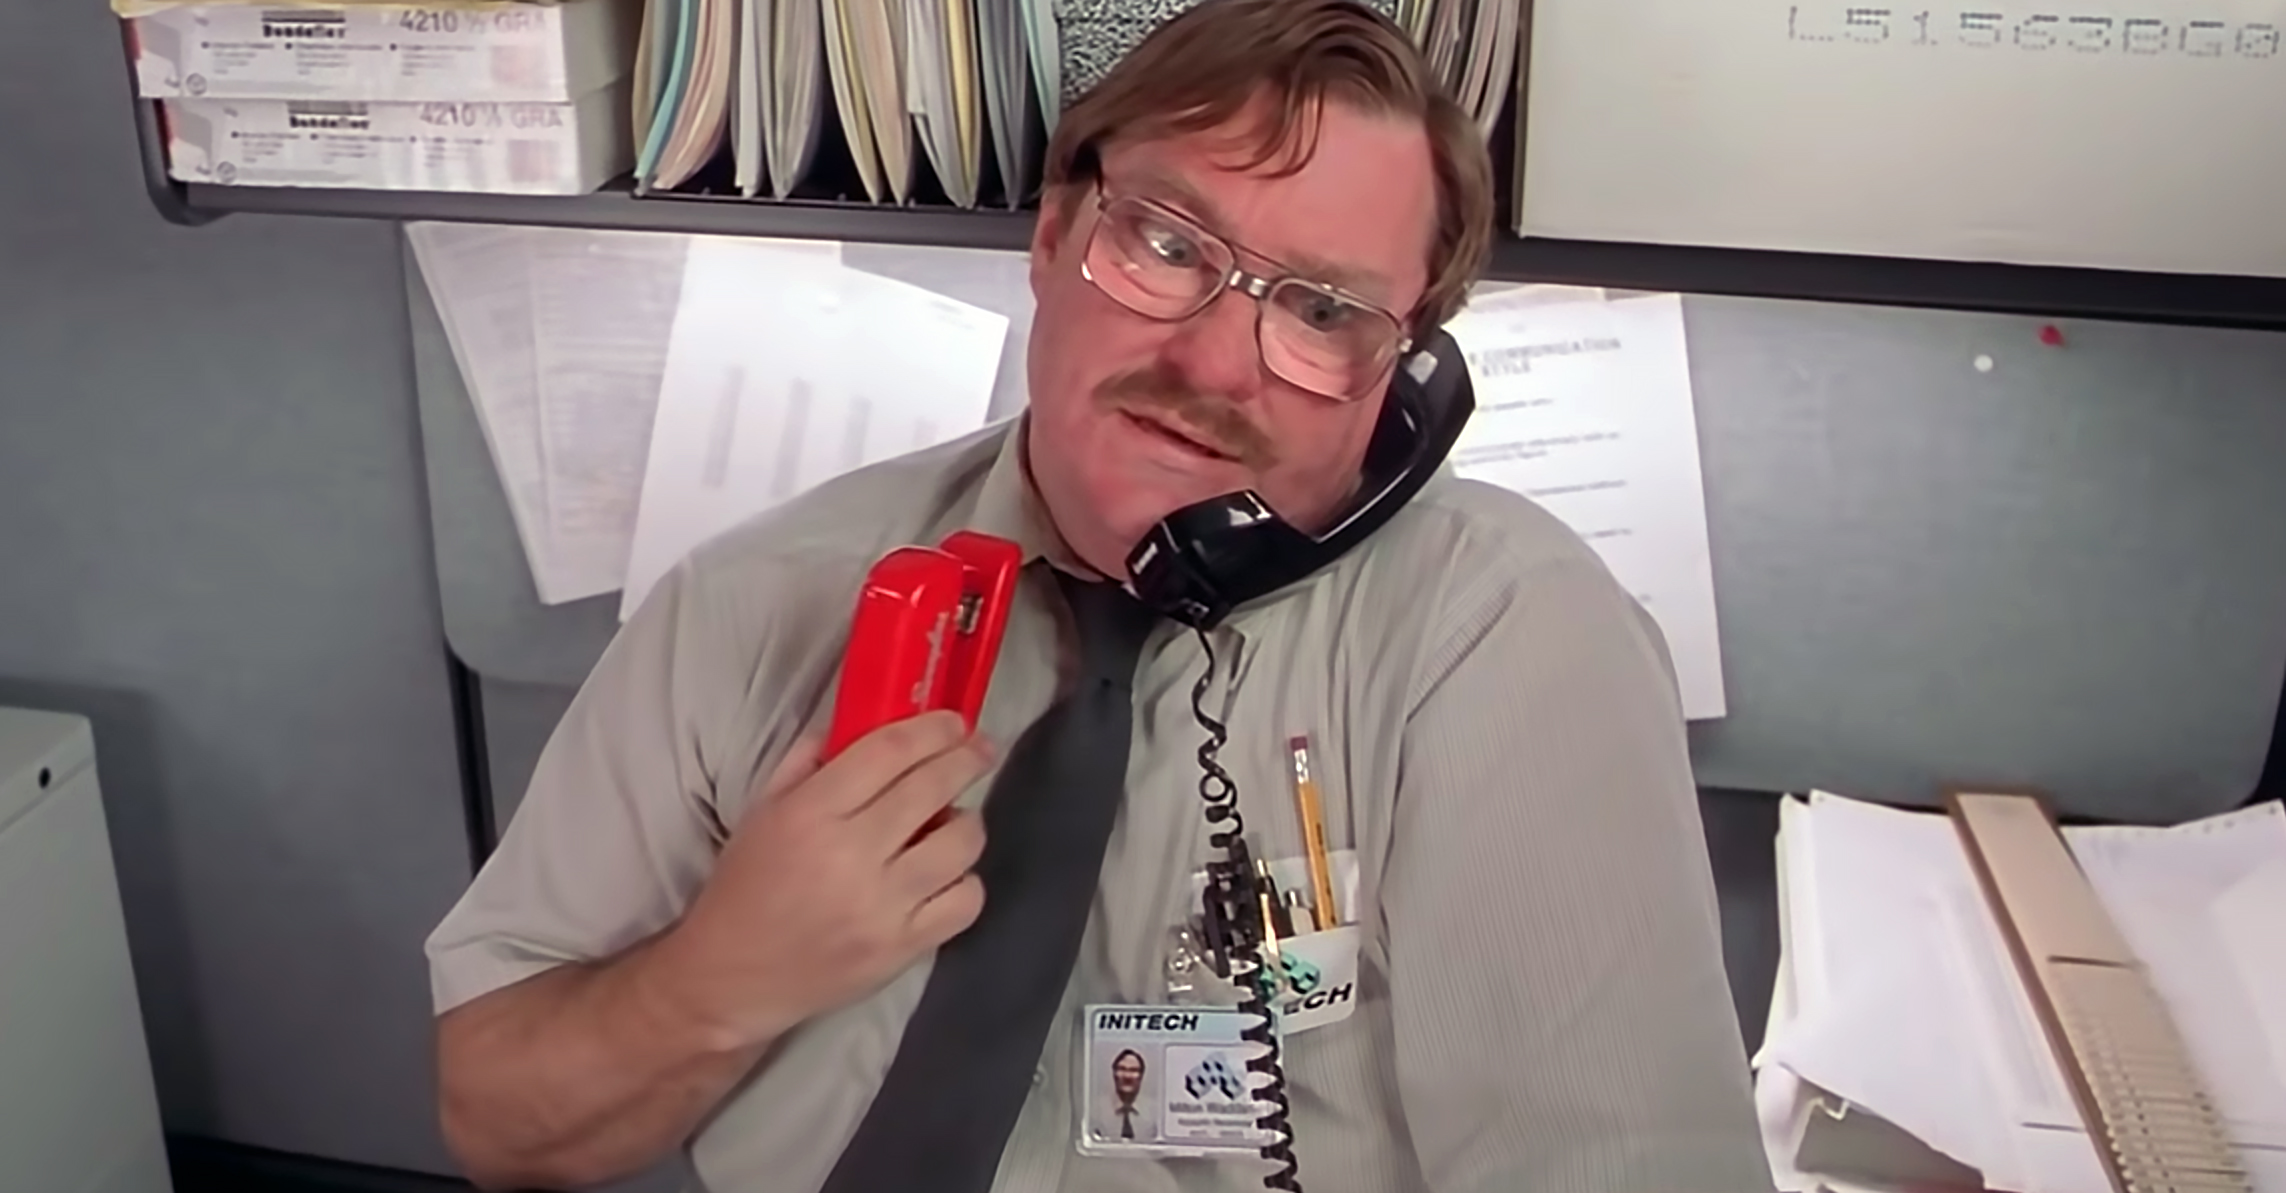 the office red stapler